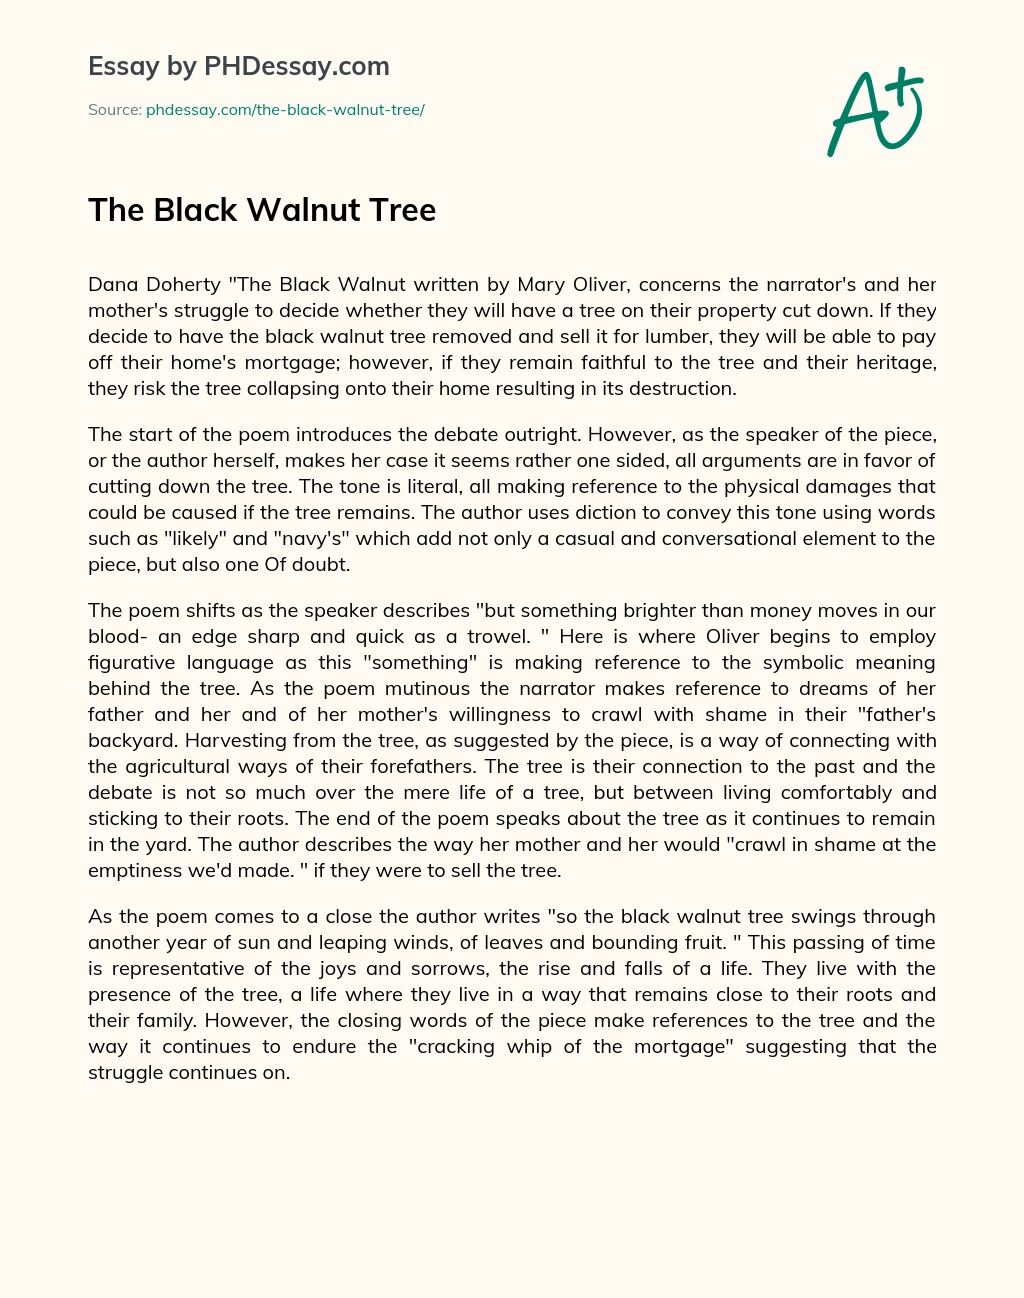 The Black Walnut Tree essay